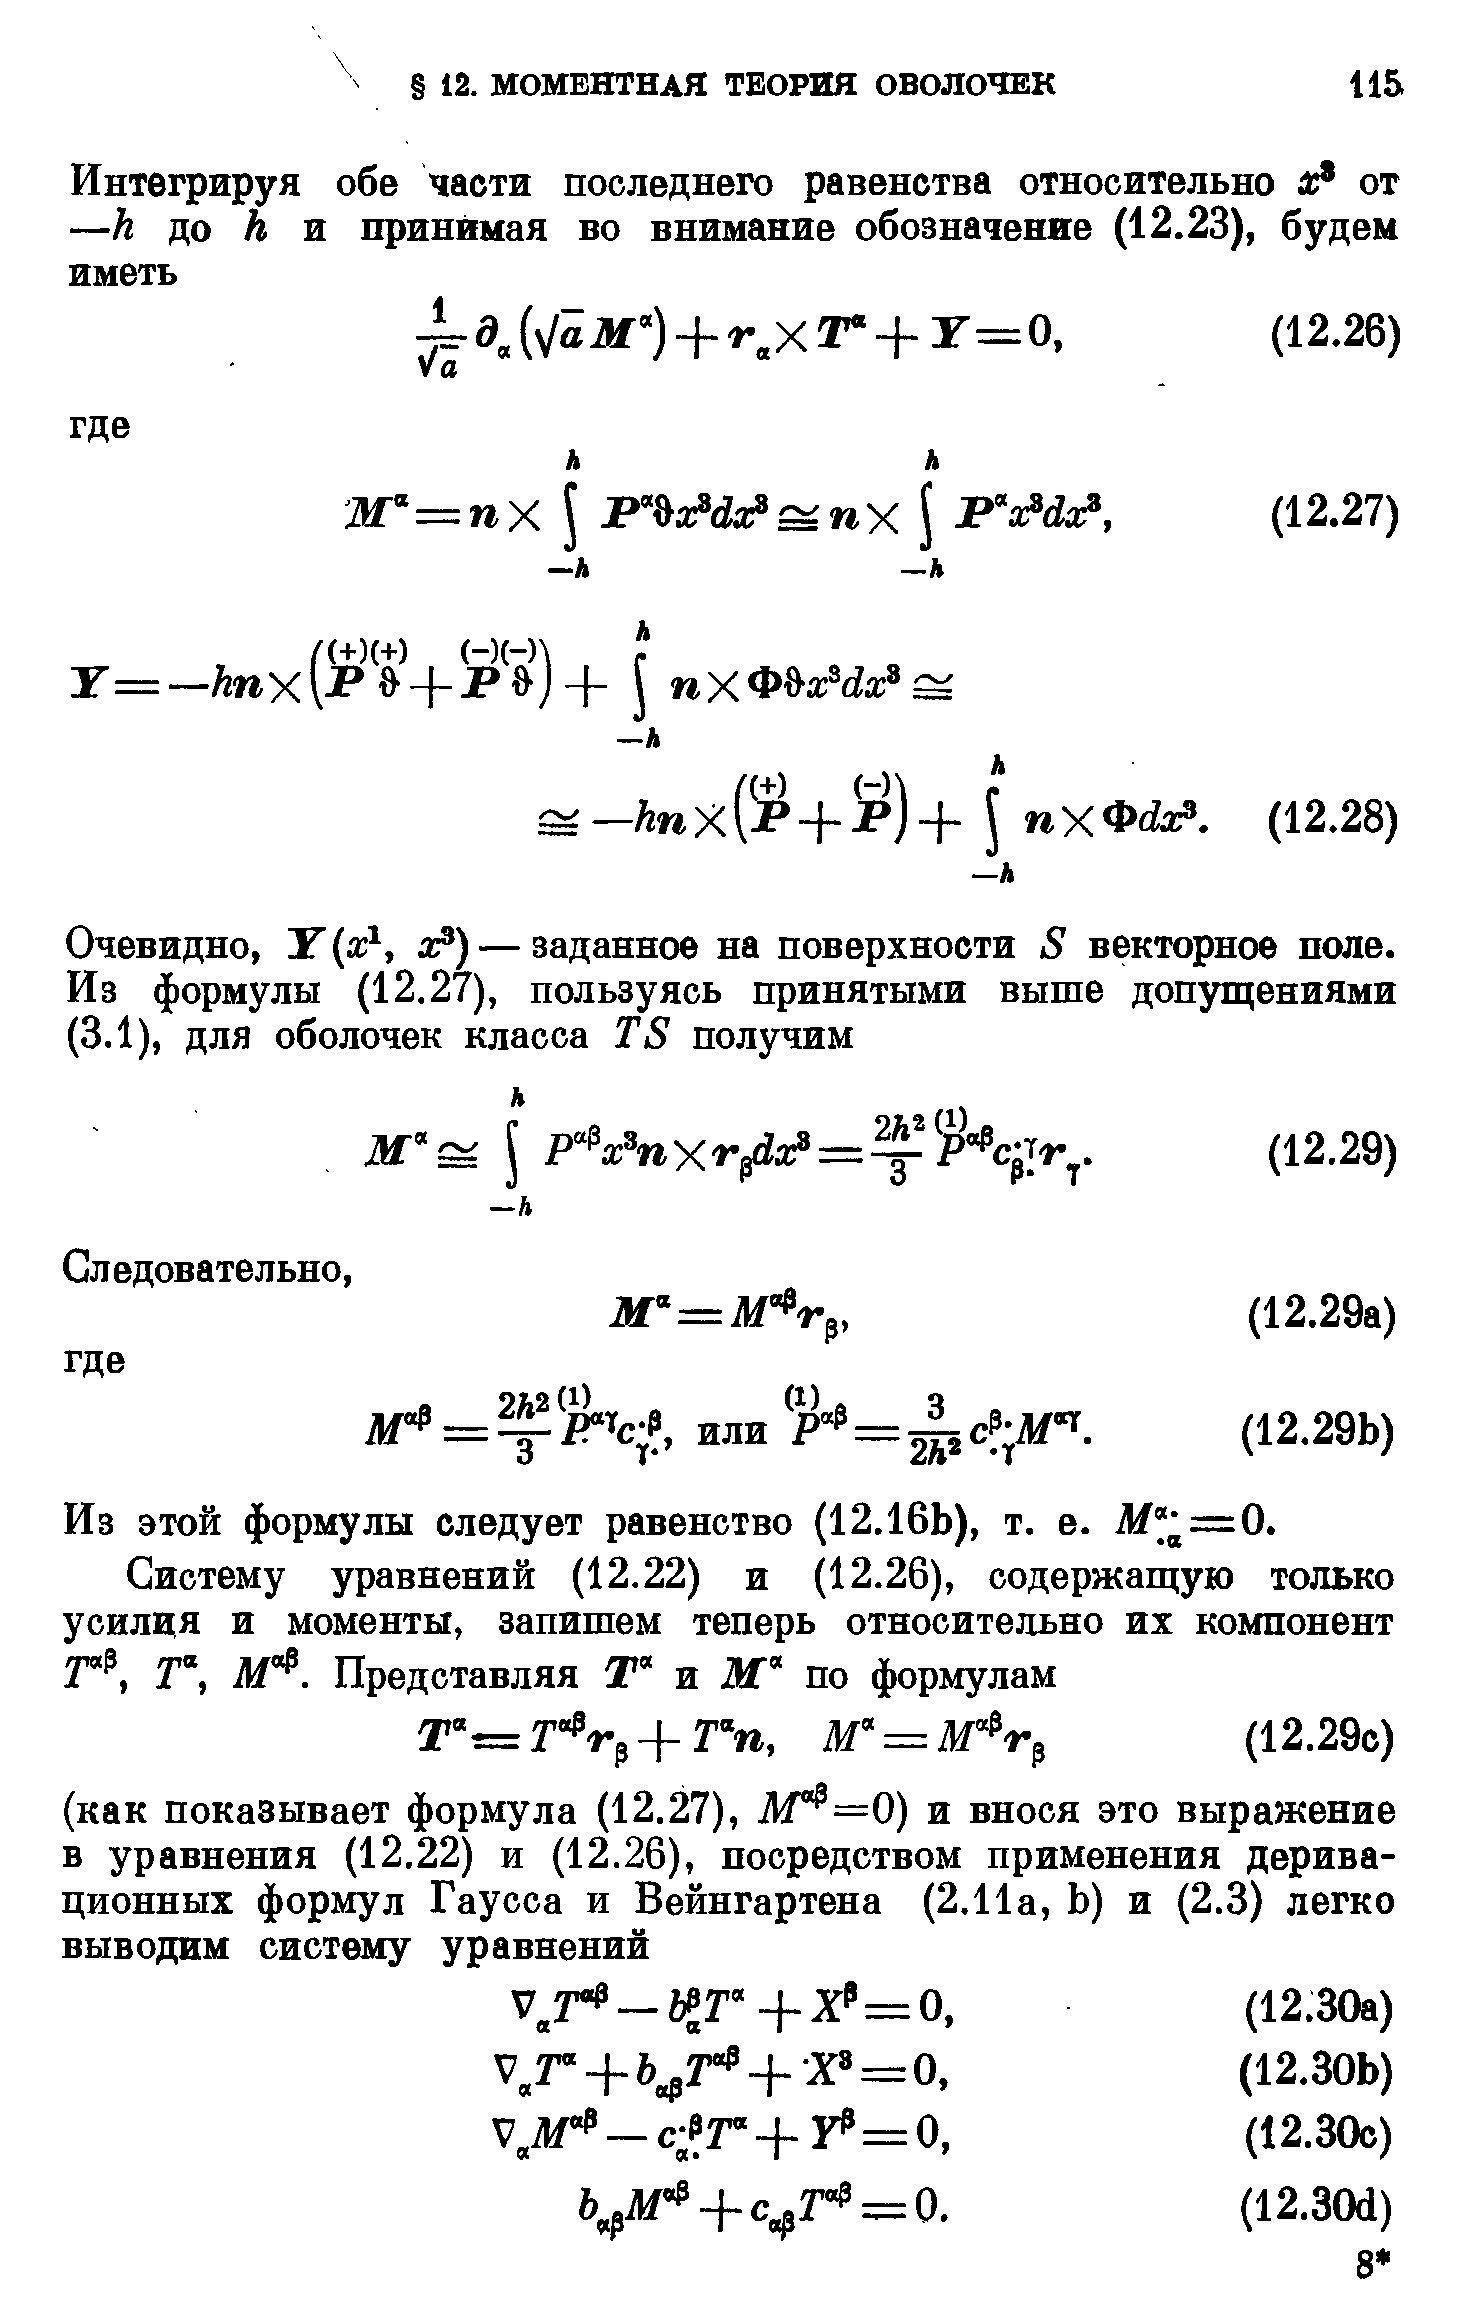 Из этой формулы следует равенство (12.16Ь), т. е. Af =0.
